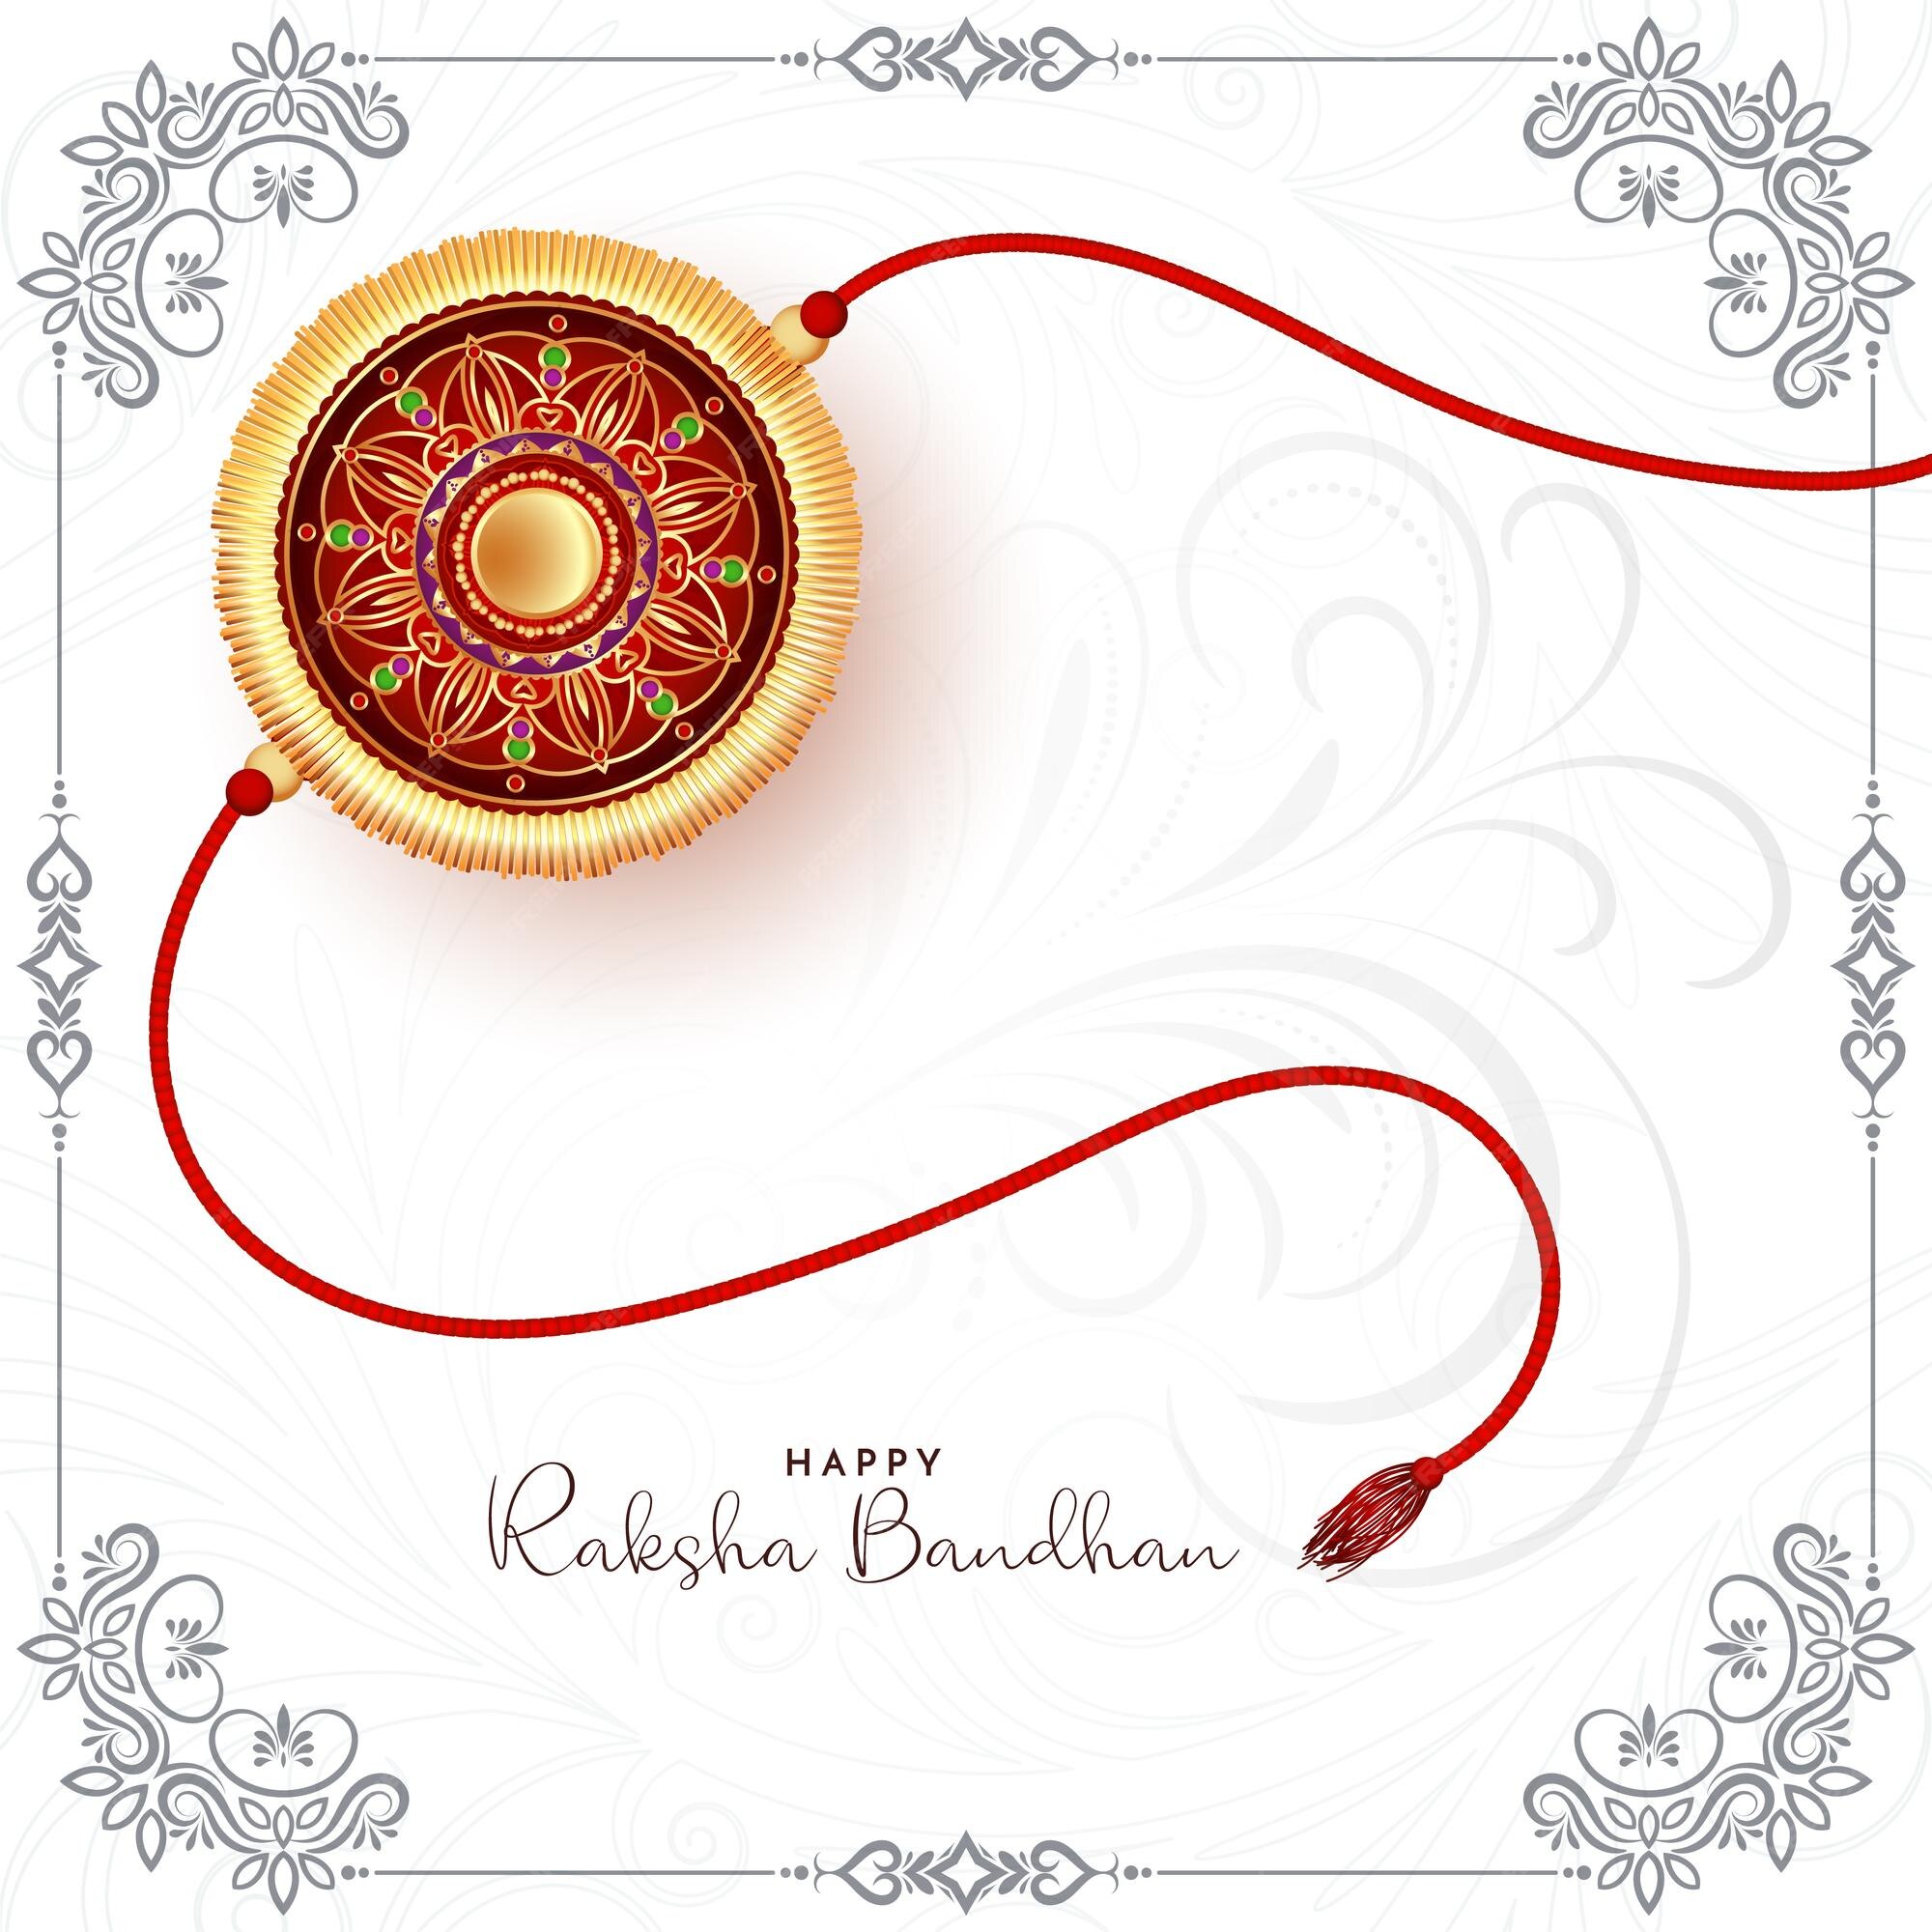 Free Vector | Happy raksha bandhan cultural indian festival background  design